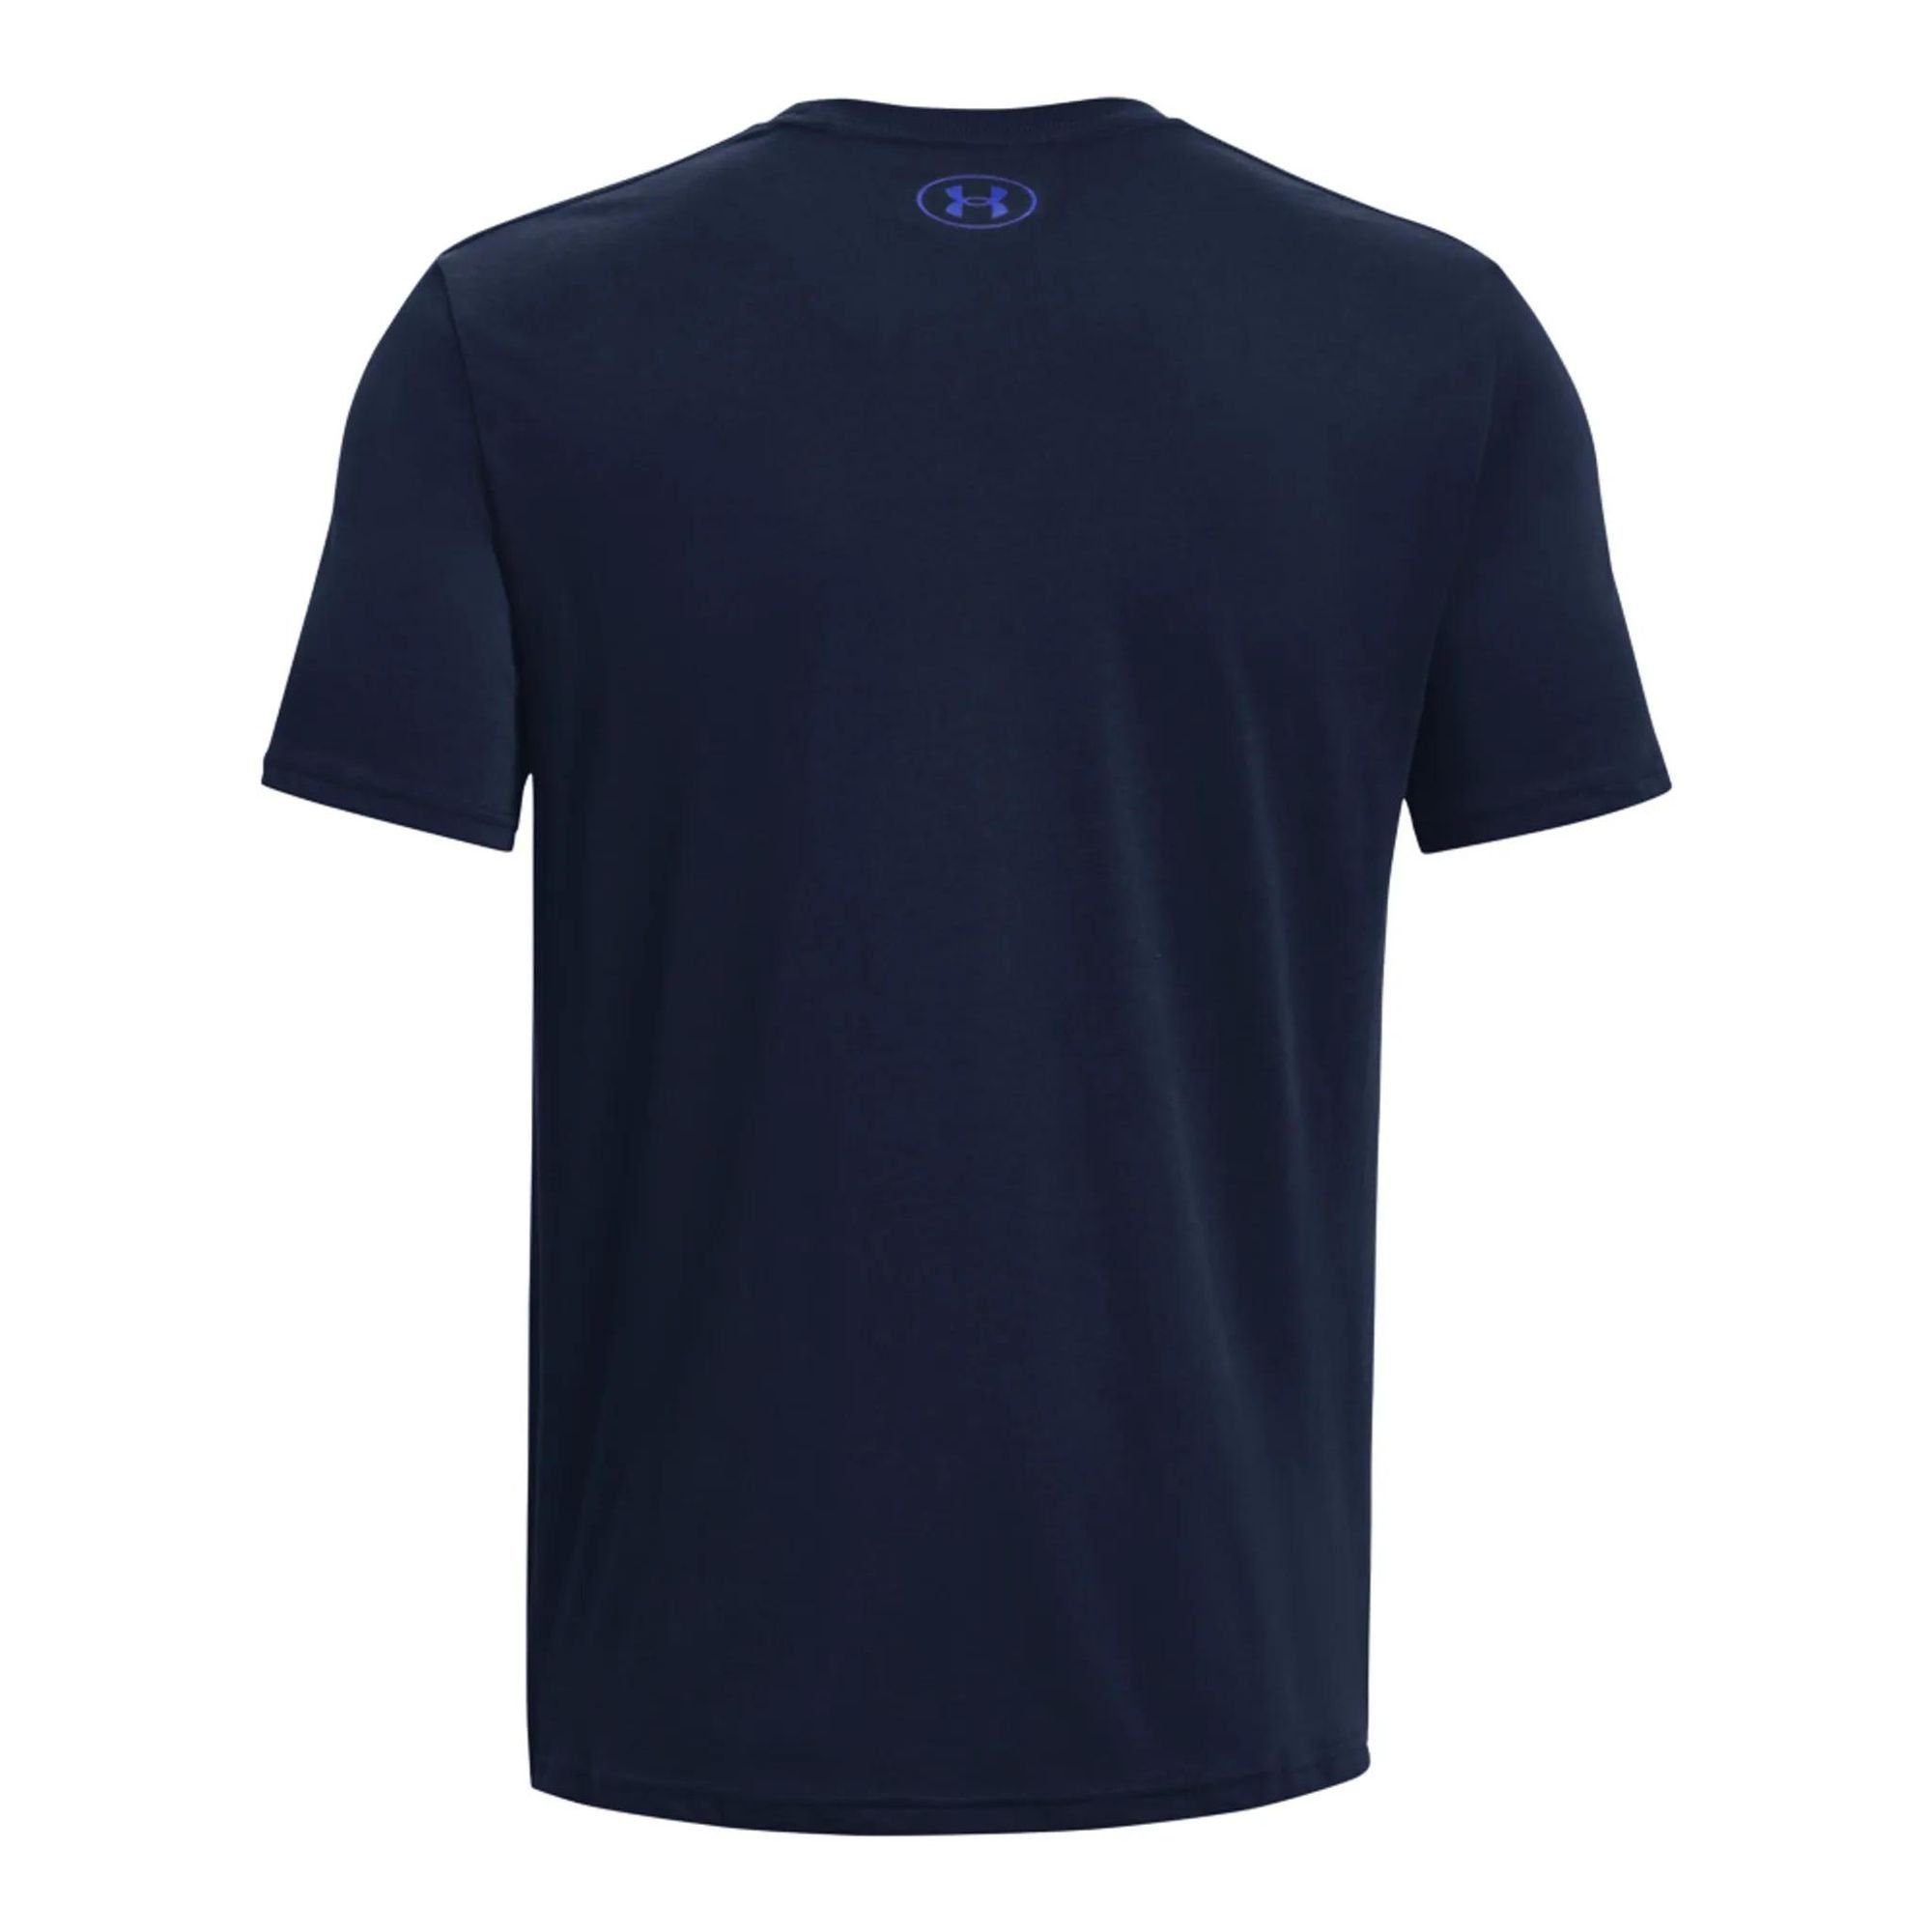 Dunkelblau Wordmark Team Issue T-Shirt Kurzarm-Oberteil Armour® UA Herren Under